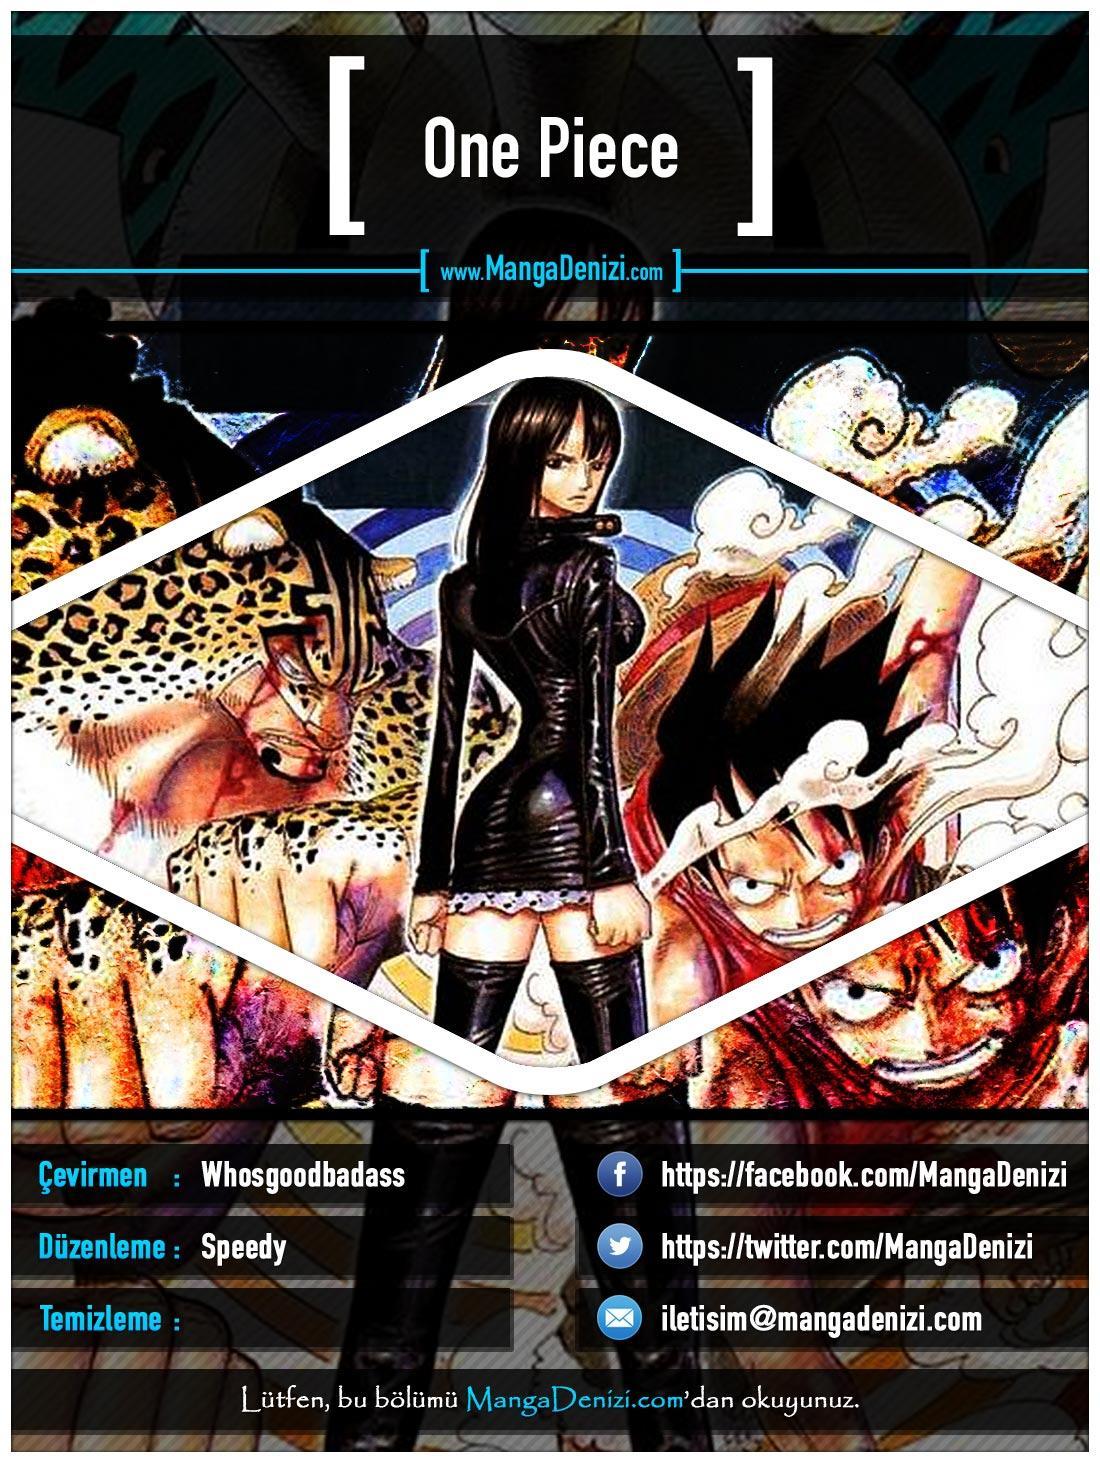 One Piece [Renkli] mangasının 0425 bölümünün 1. sayfasını okuyorsunuz.